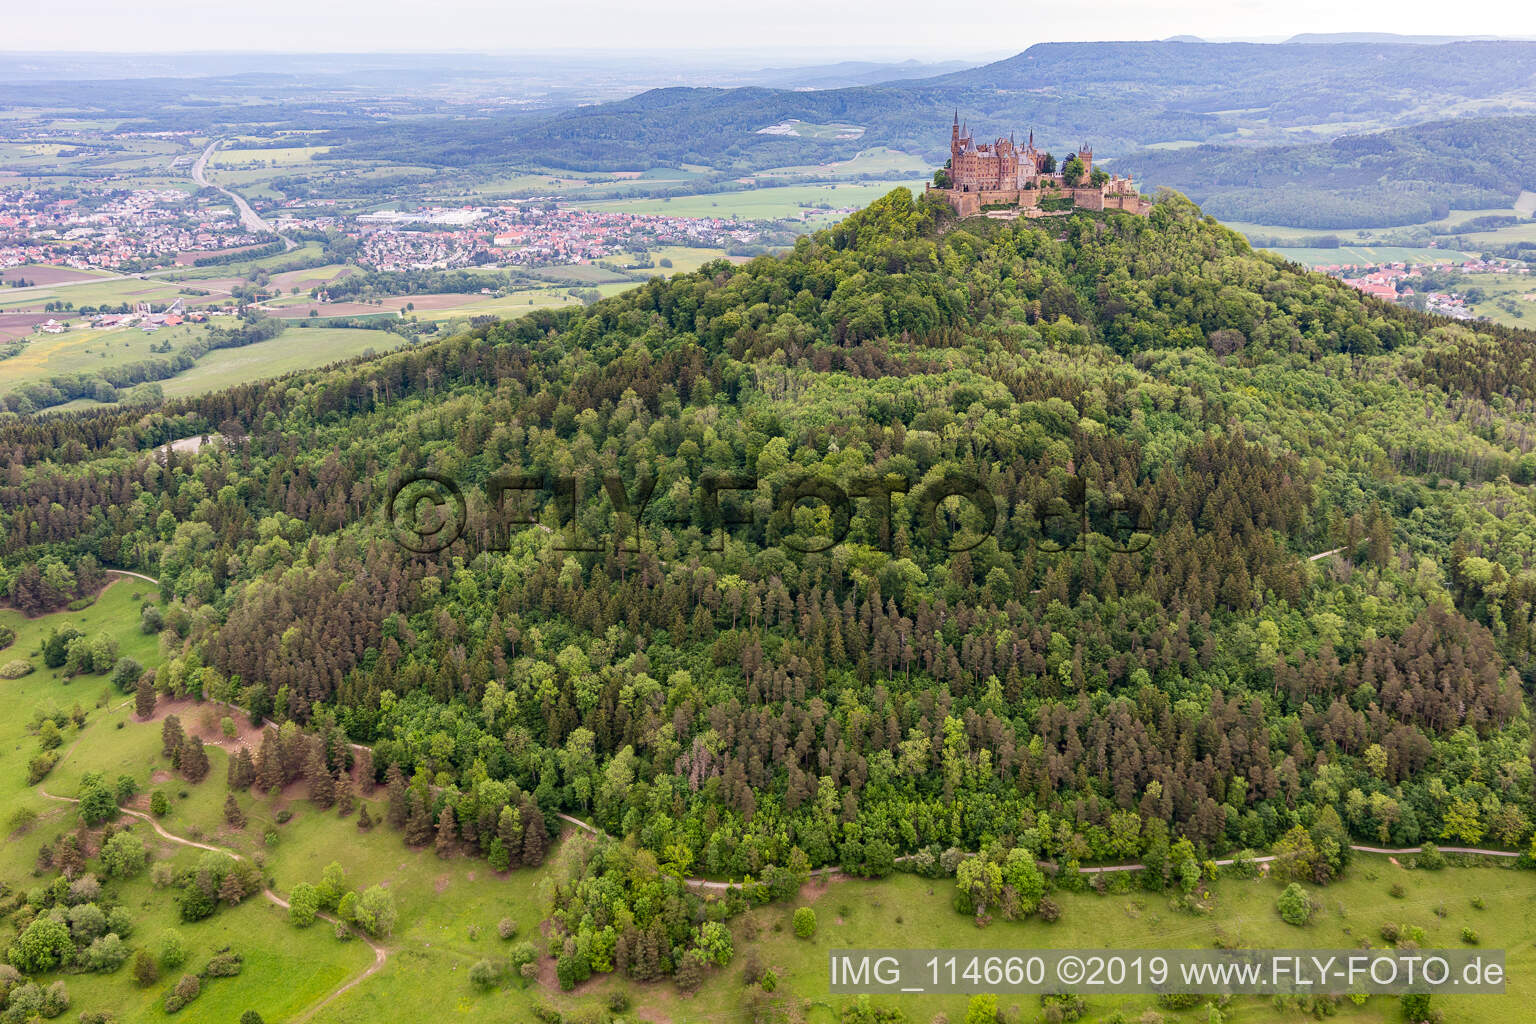 Luftbild von Burg Hohenzollern in Hechingen im Bundesland Baden-Württemberg, Deutschland